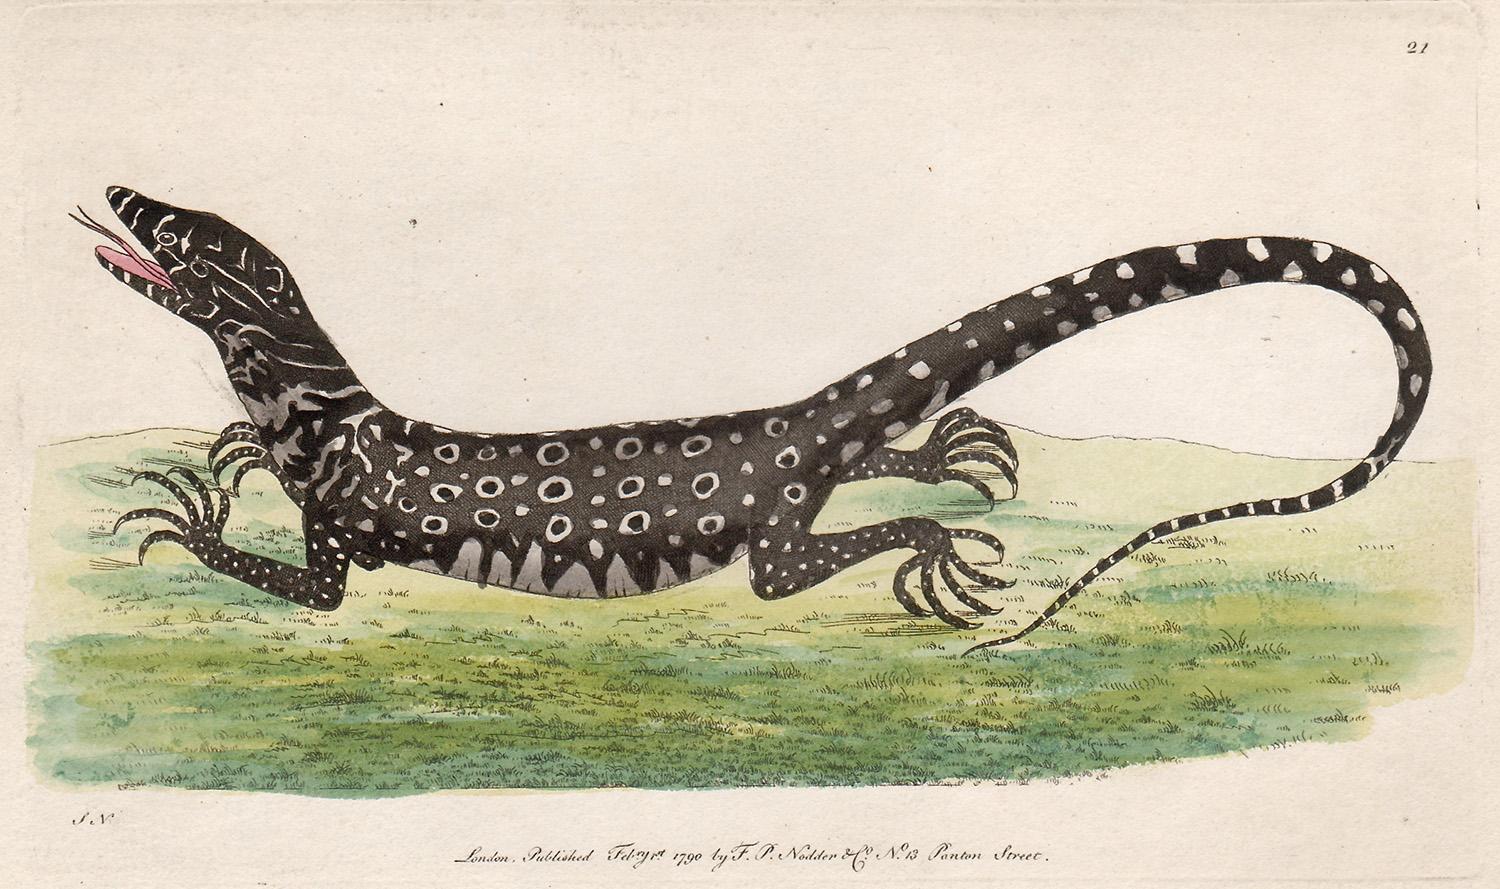 Frederick Polydore Nodder Animal Print – The Monitory Lizard, Australien, Gravur mit Original-Handkolorierung, 1790